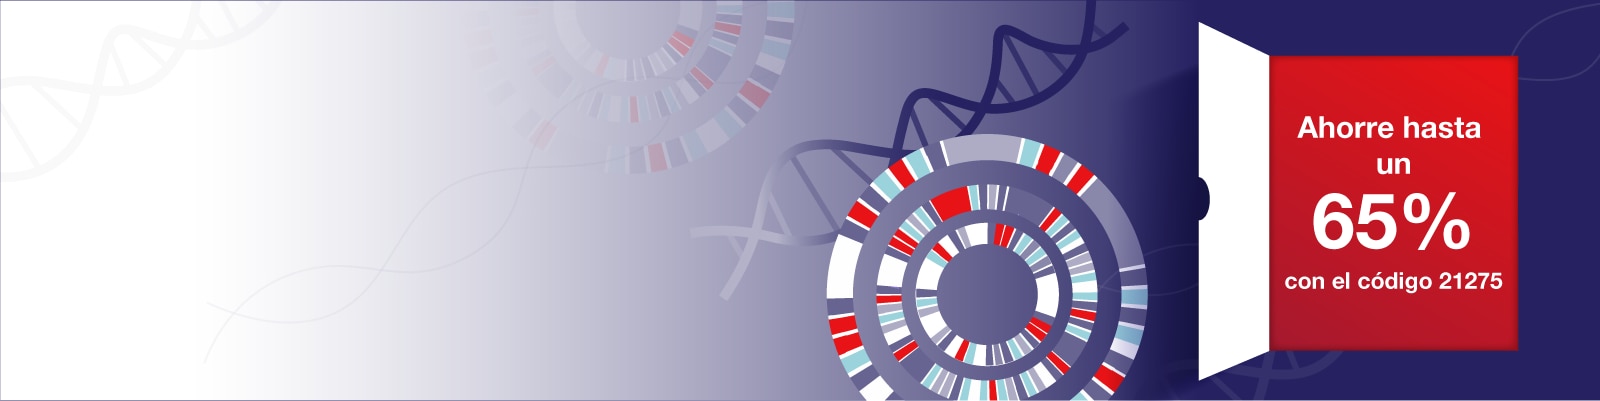 Secuenciación del ADN banner